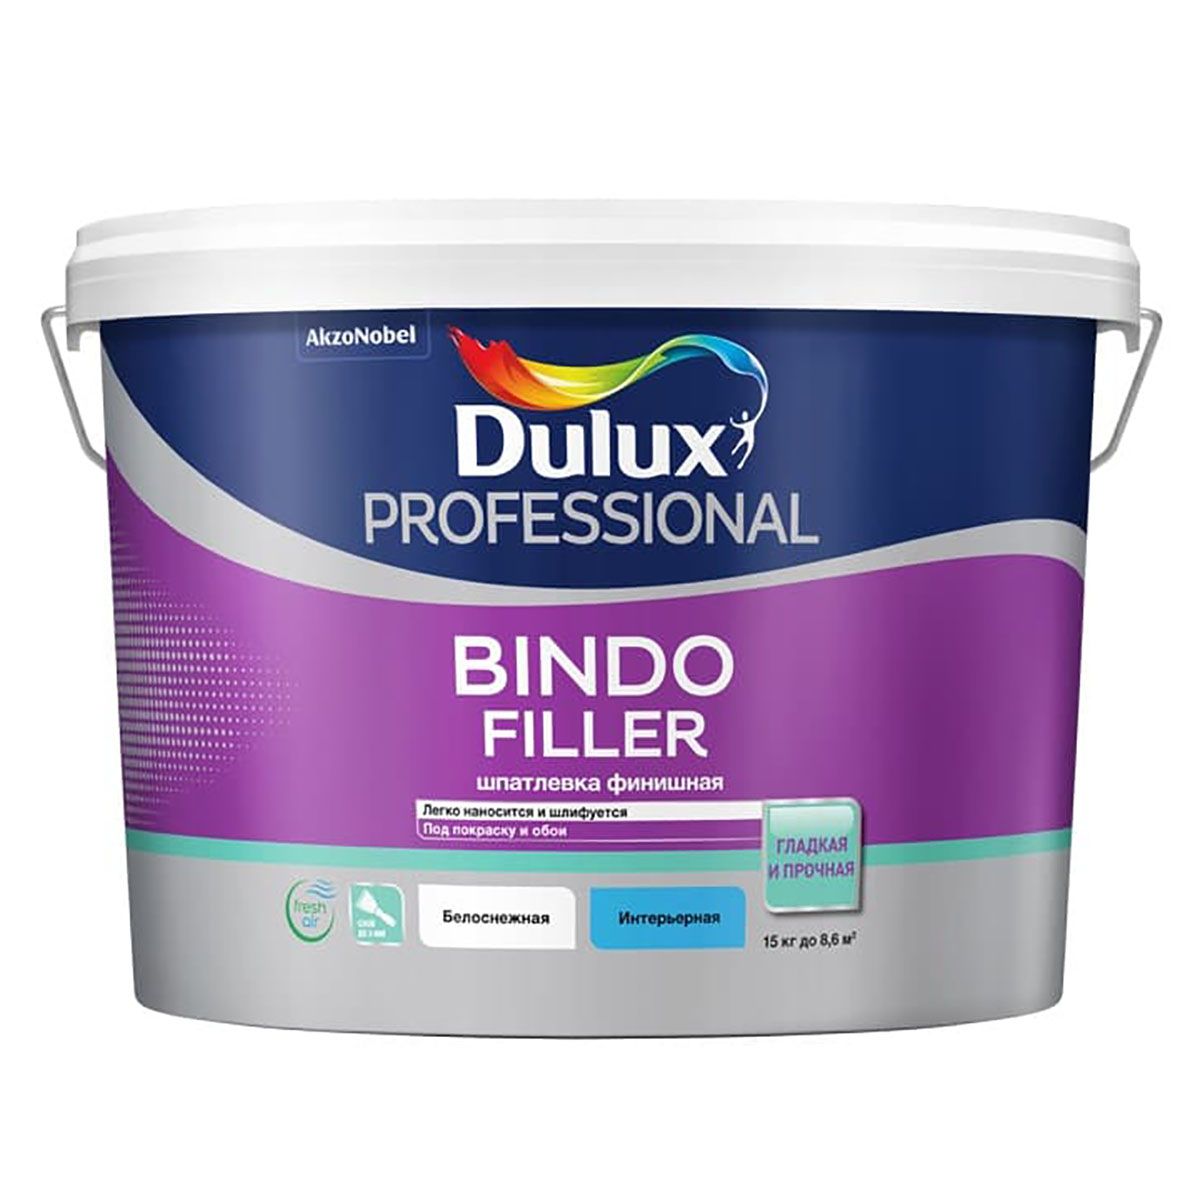 Шпатлевка для стен и потолков Dulux Bindo Filler финишная, 8,6 л финишная шпатлевка vgt